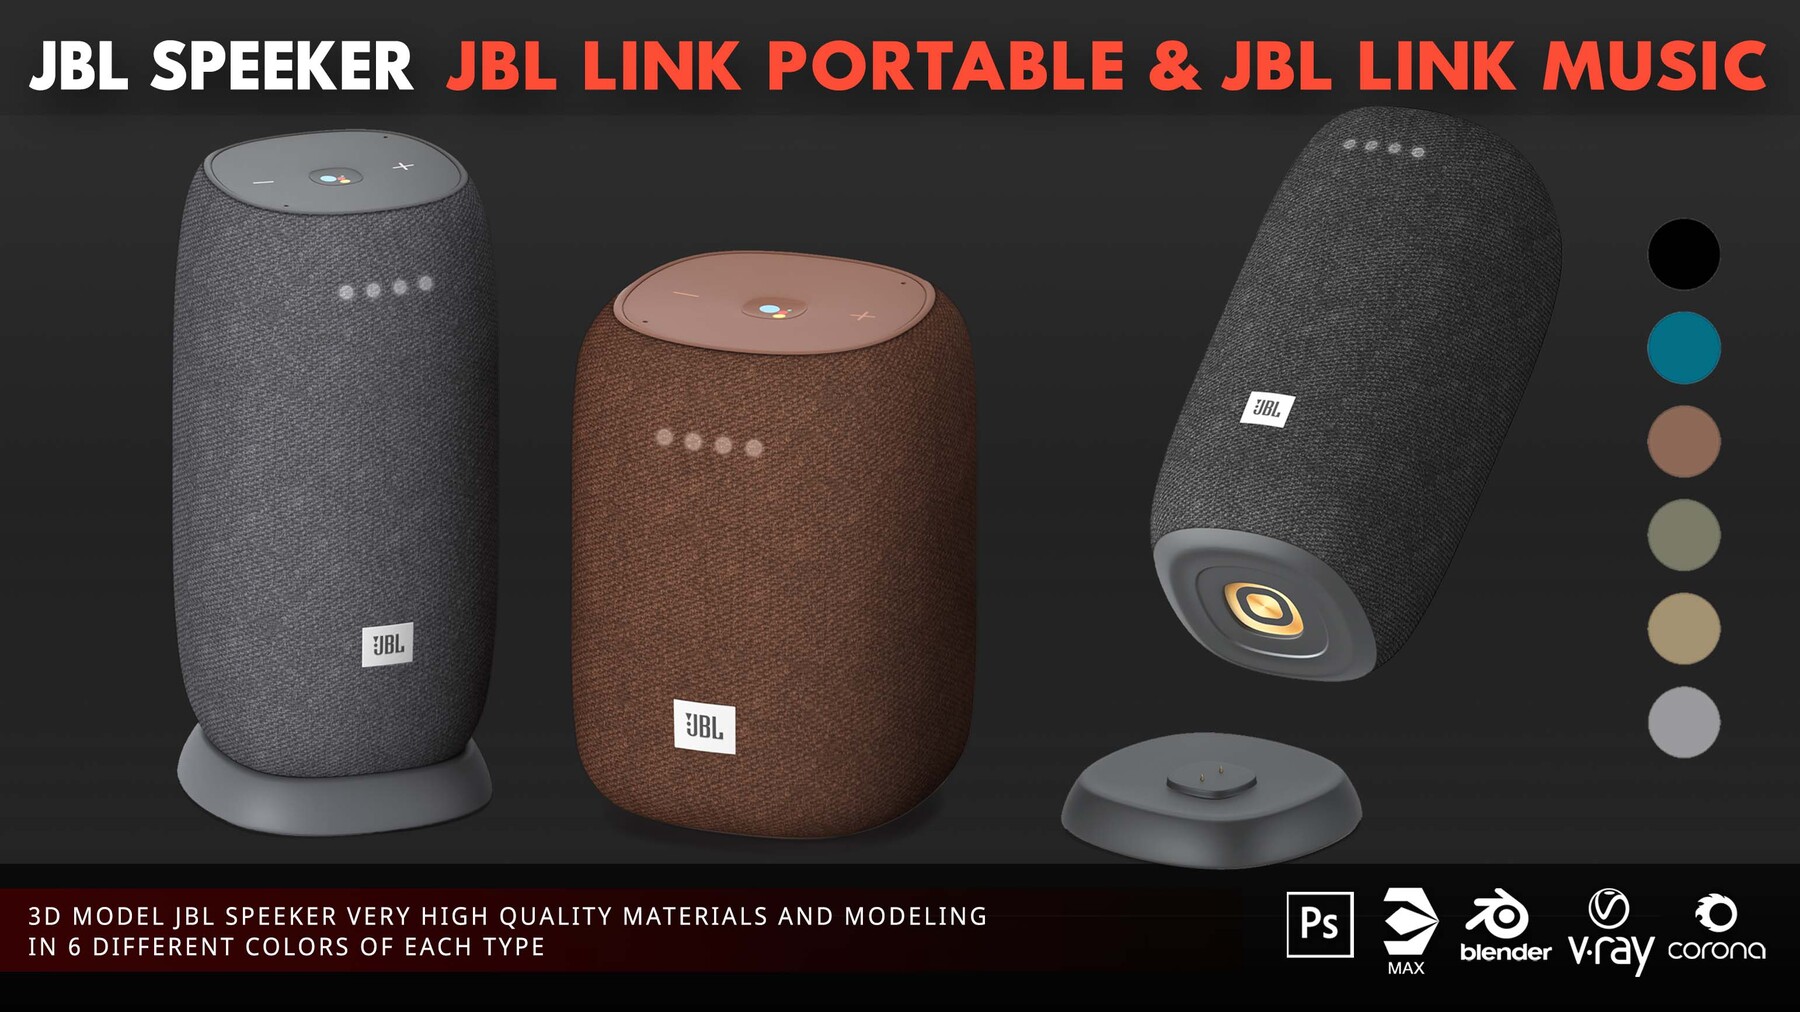 ArtStation - Link Portable JBL Link Music Resources